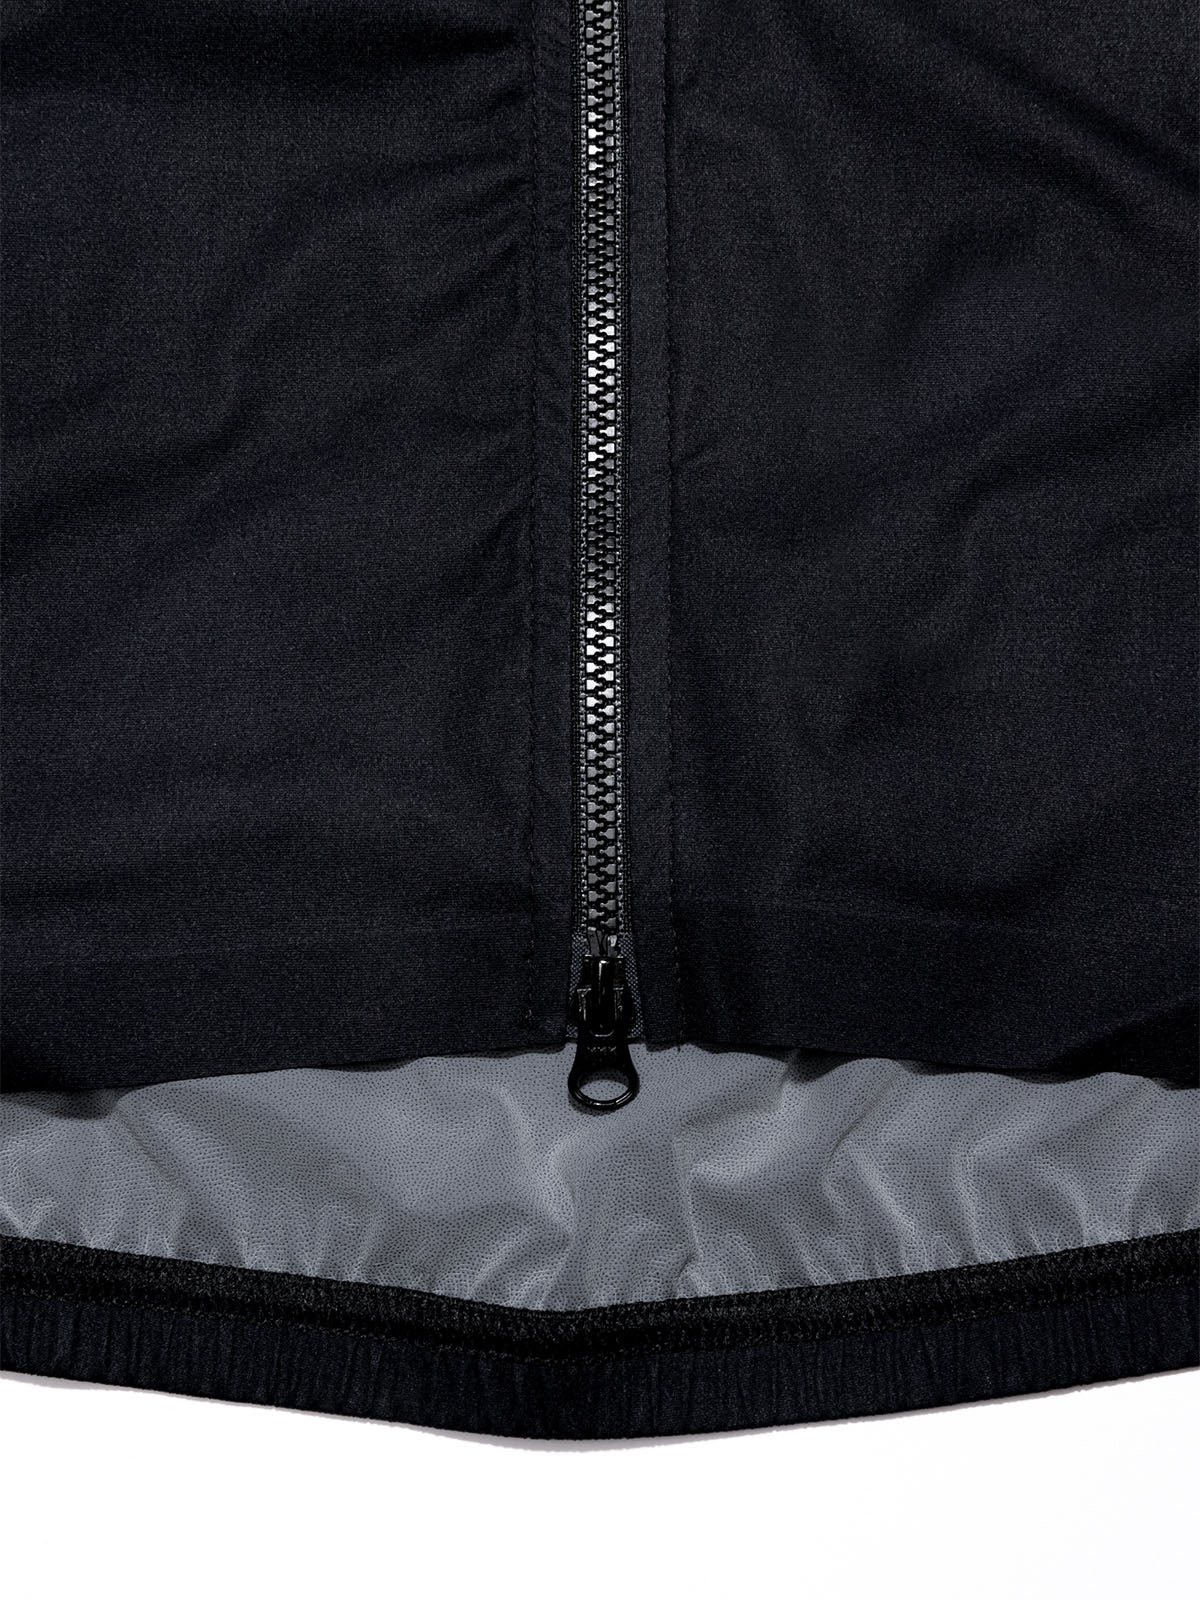 Altosphere Vest von Mission Workshop - Wetterfeste Taschen & Technische Bekleidung - San Francisco & Los Angeles - Für die Ewigkeit gebaut - Garantiert